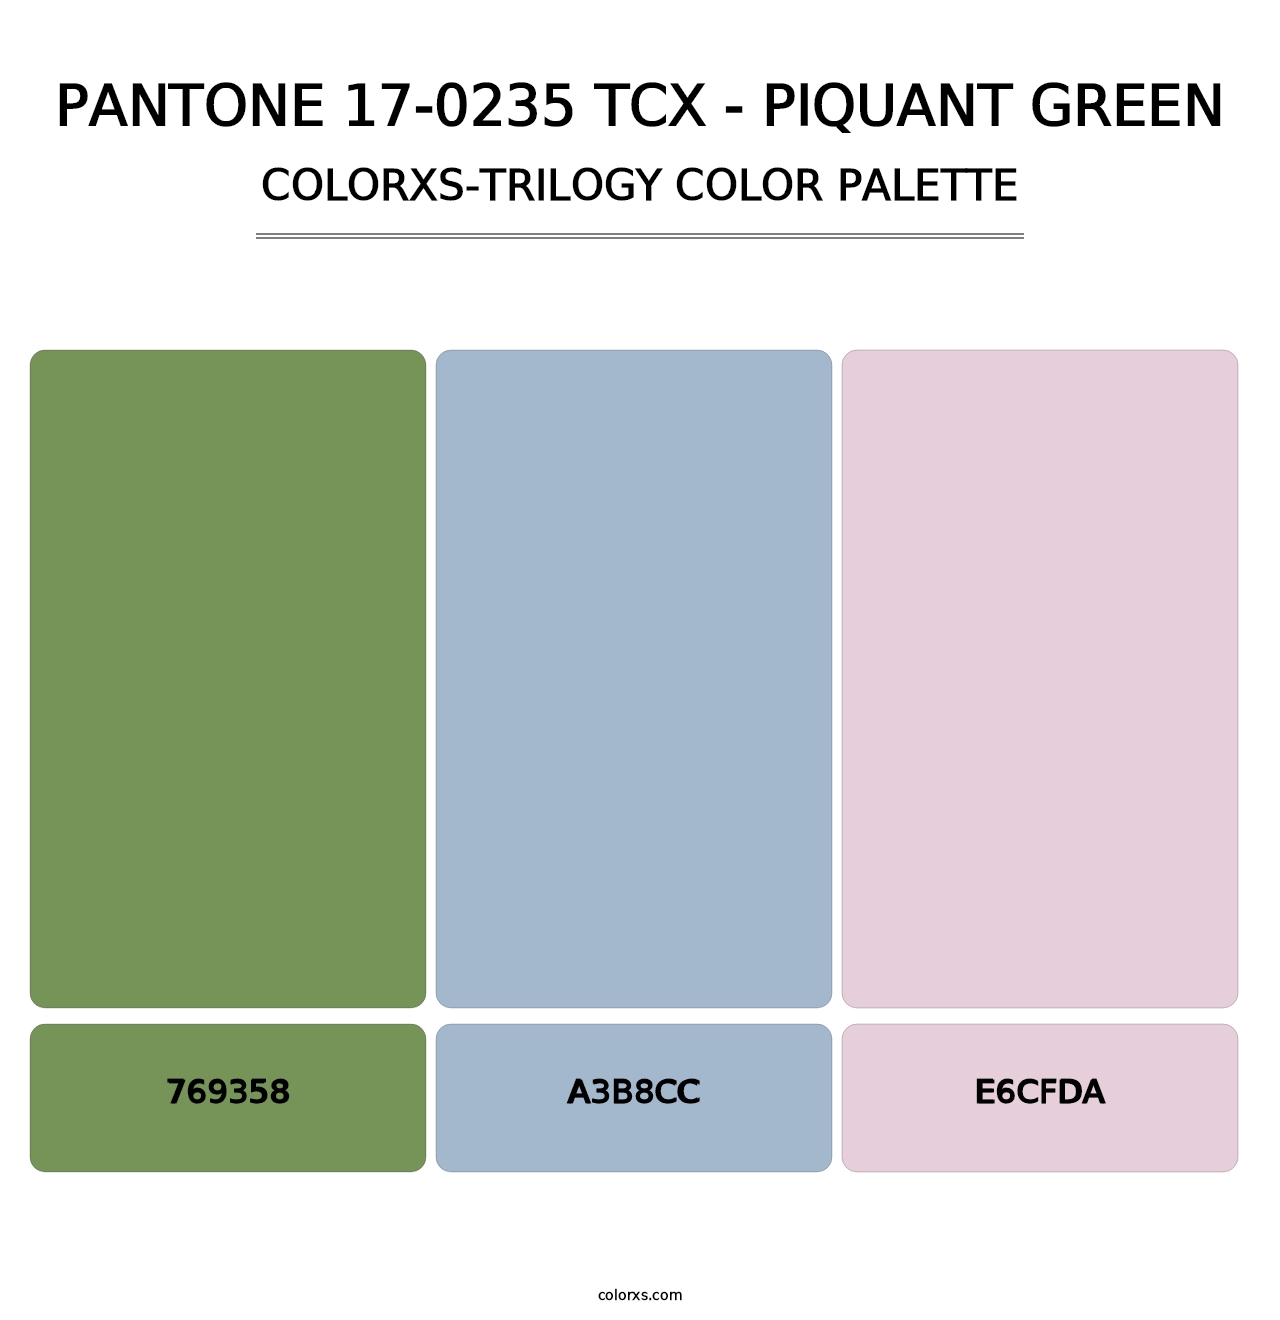 PANTONE 17-0235 TCX - Piquant Green - Colorxs Trilogy Palette